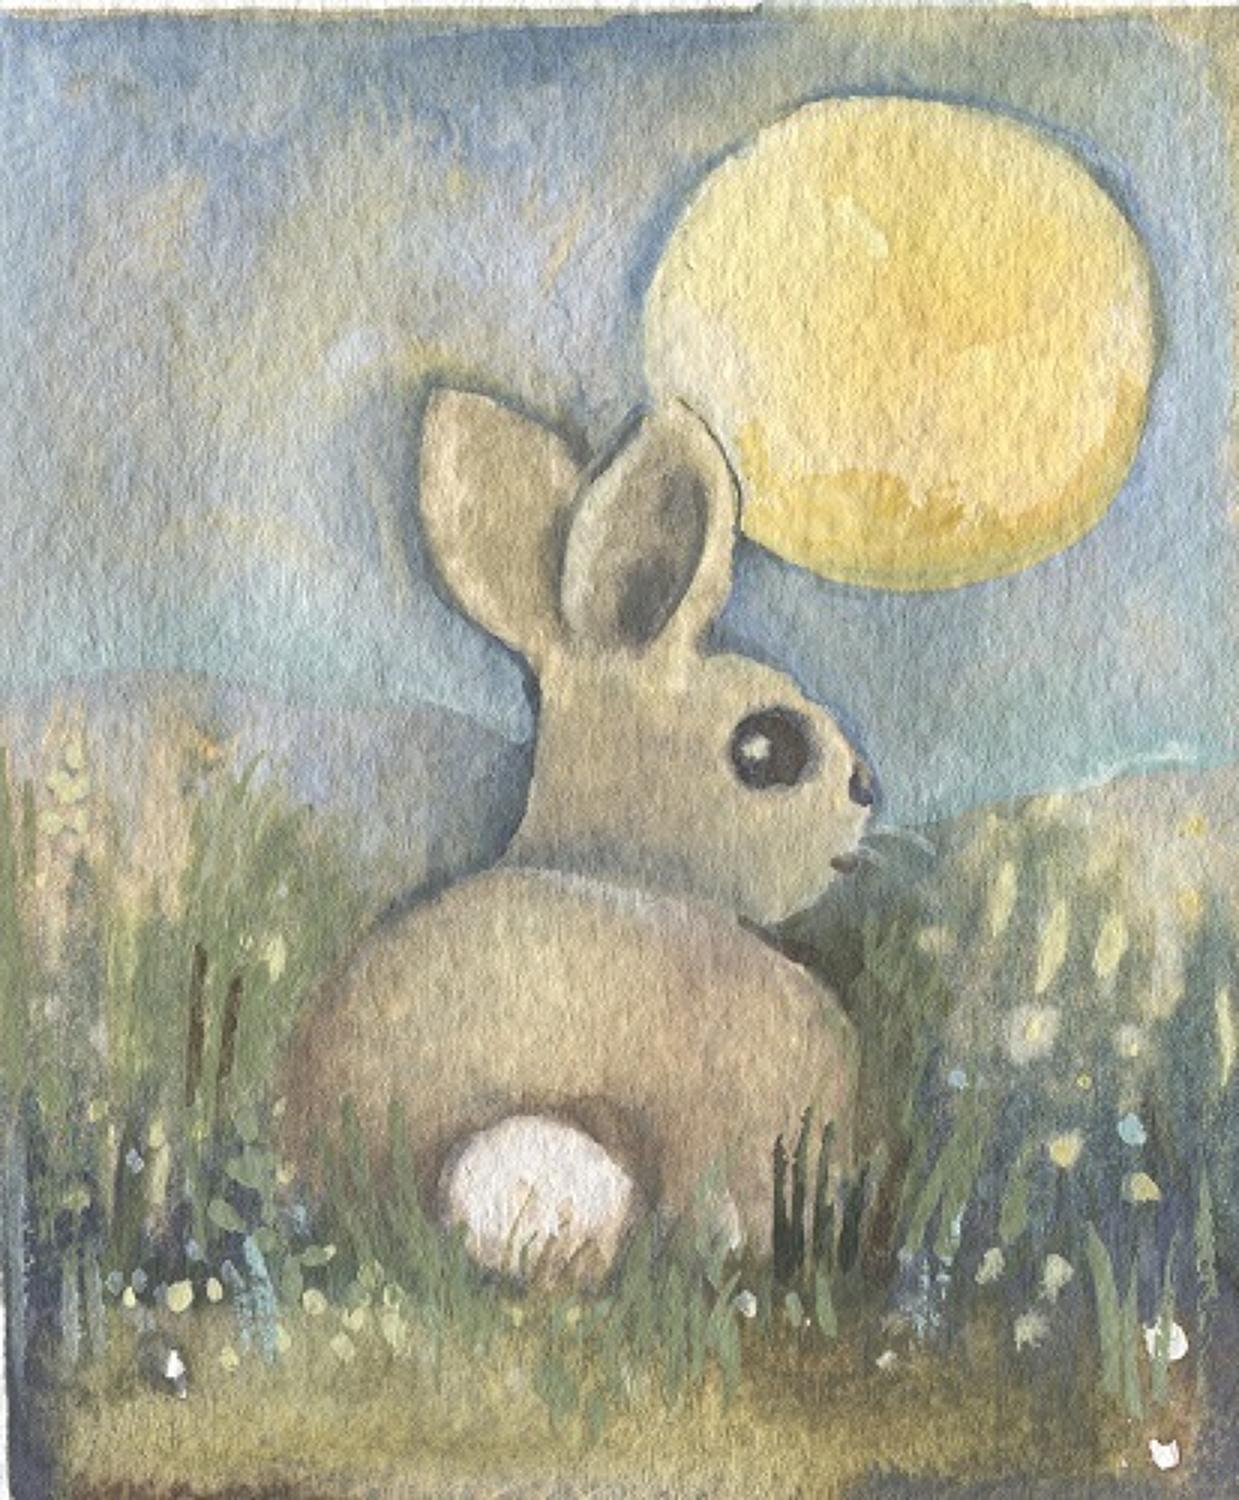 Baby rabbit in moonlight